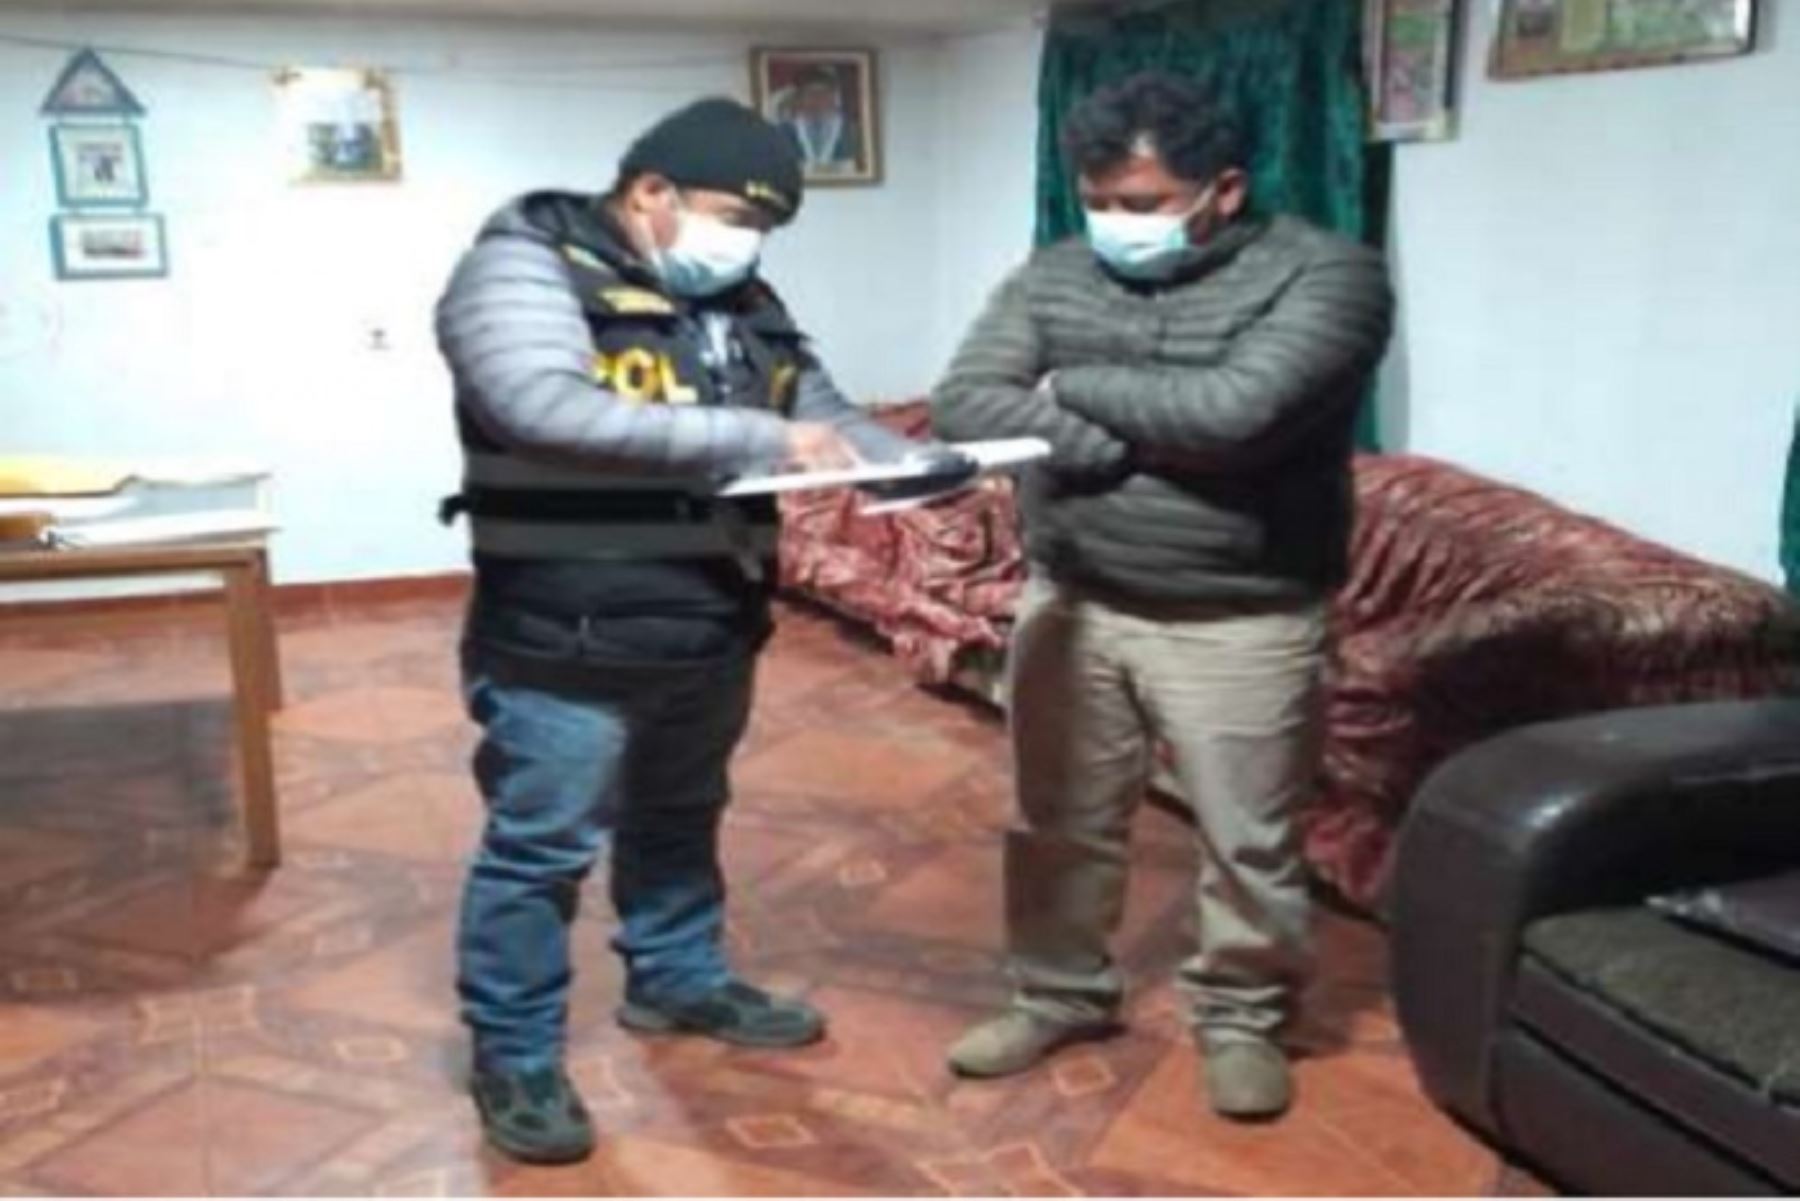 Durante la operación policial se efectuó el allanamiento de tres viviendas ubicadas en el distrito de El Mantaro, provincia de Jauja.